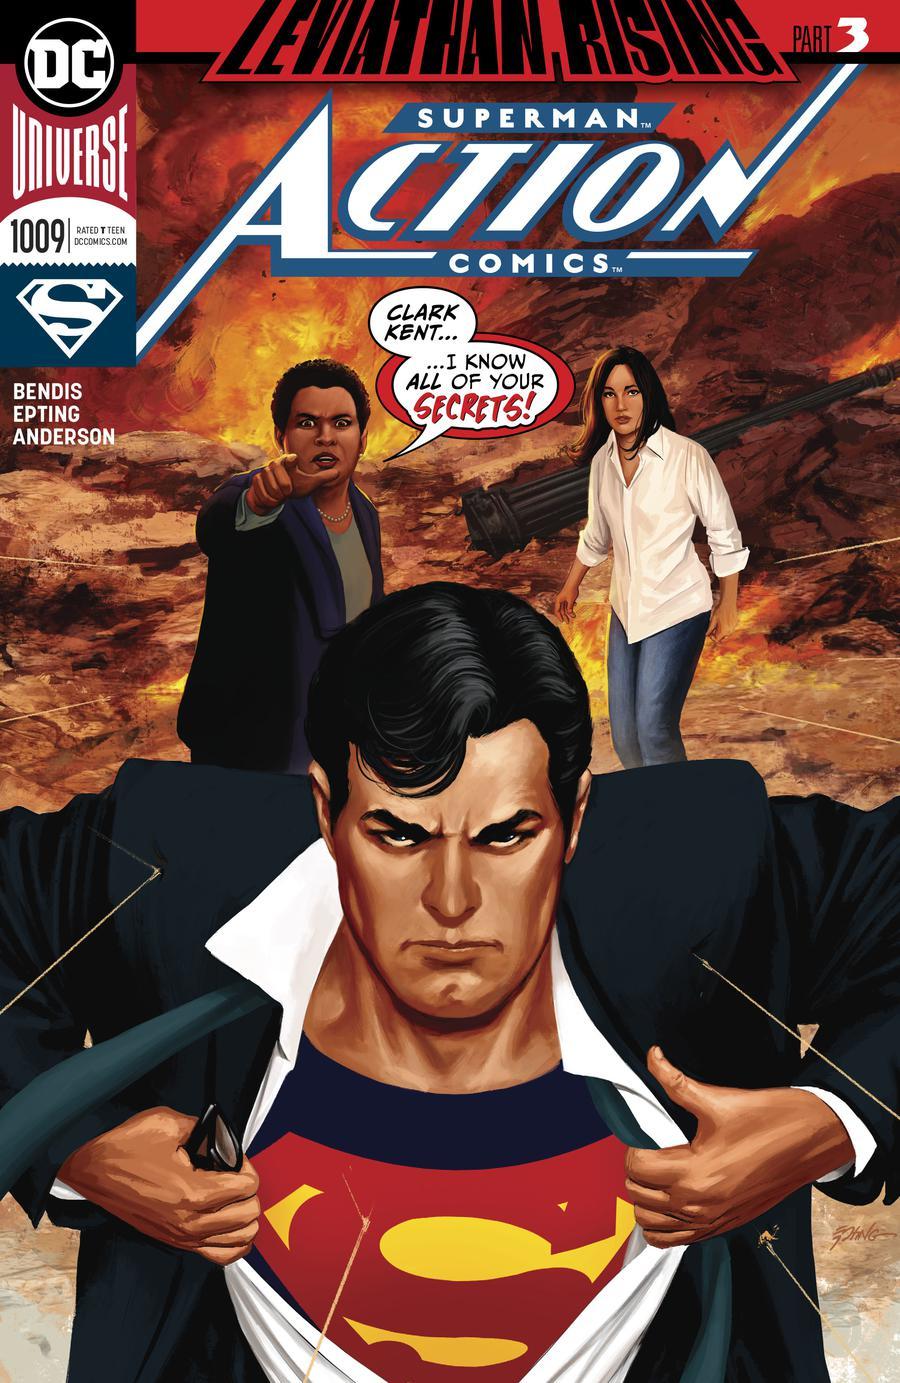 Action Comics Vol. 2 #1009